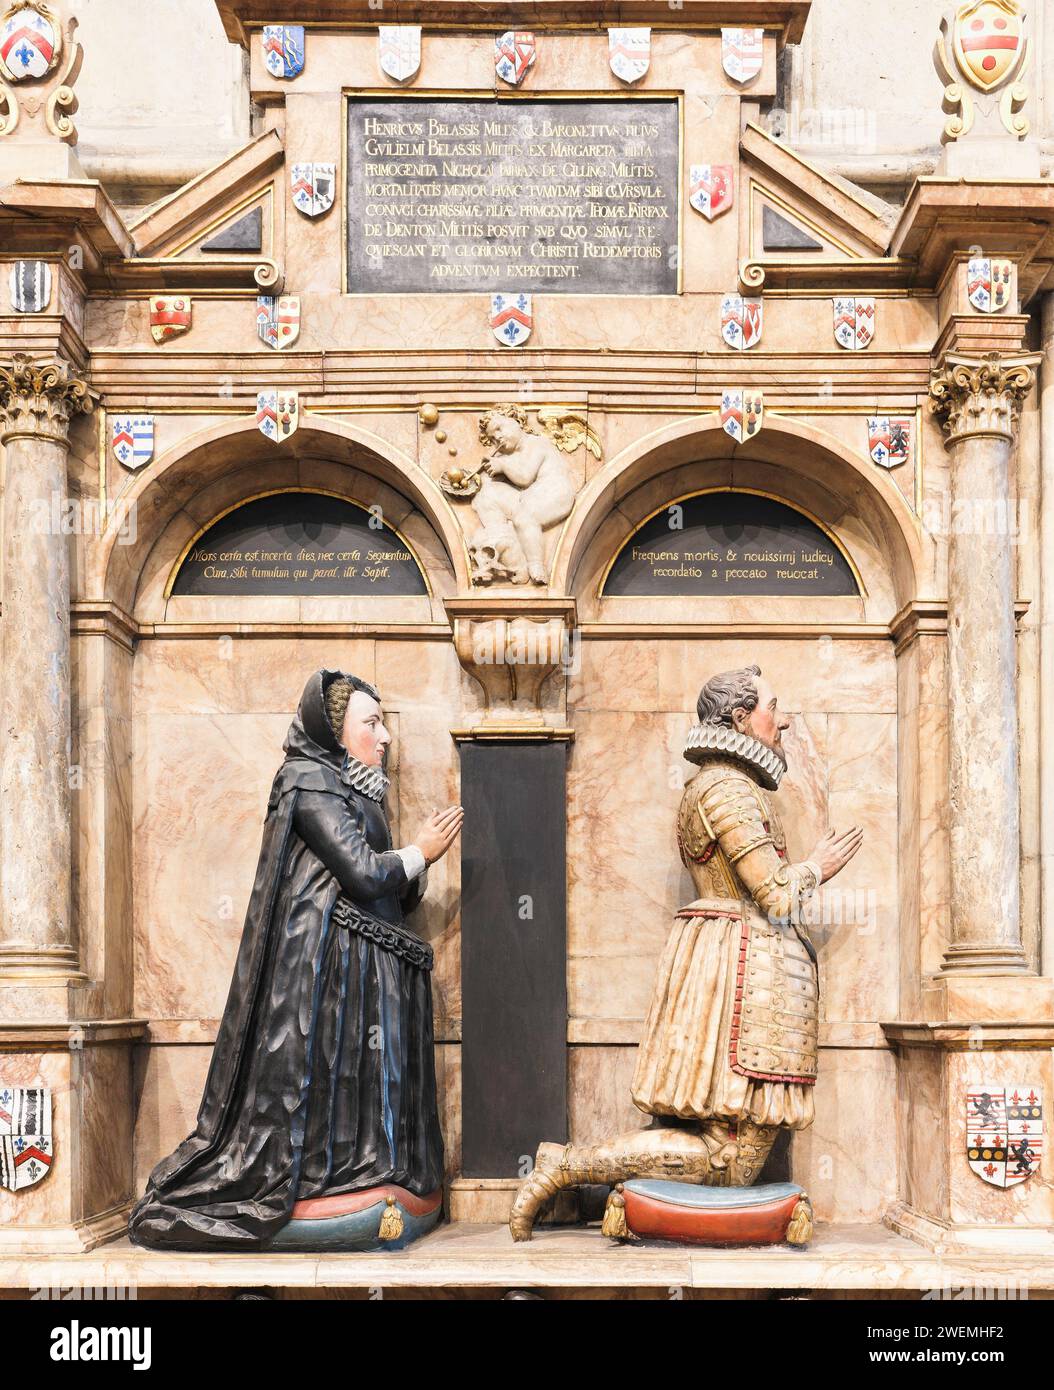 Statues, d'un couple pieux espérant être aussi bien dans l'au-delà qu'ils l'étaient dans la vie terrestre, sur un mur à la cathédrale de York, en Angleterre. Banque D'Images